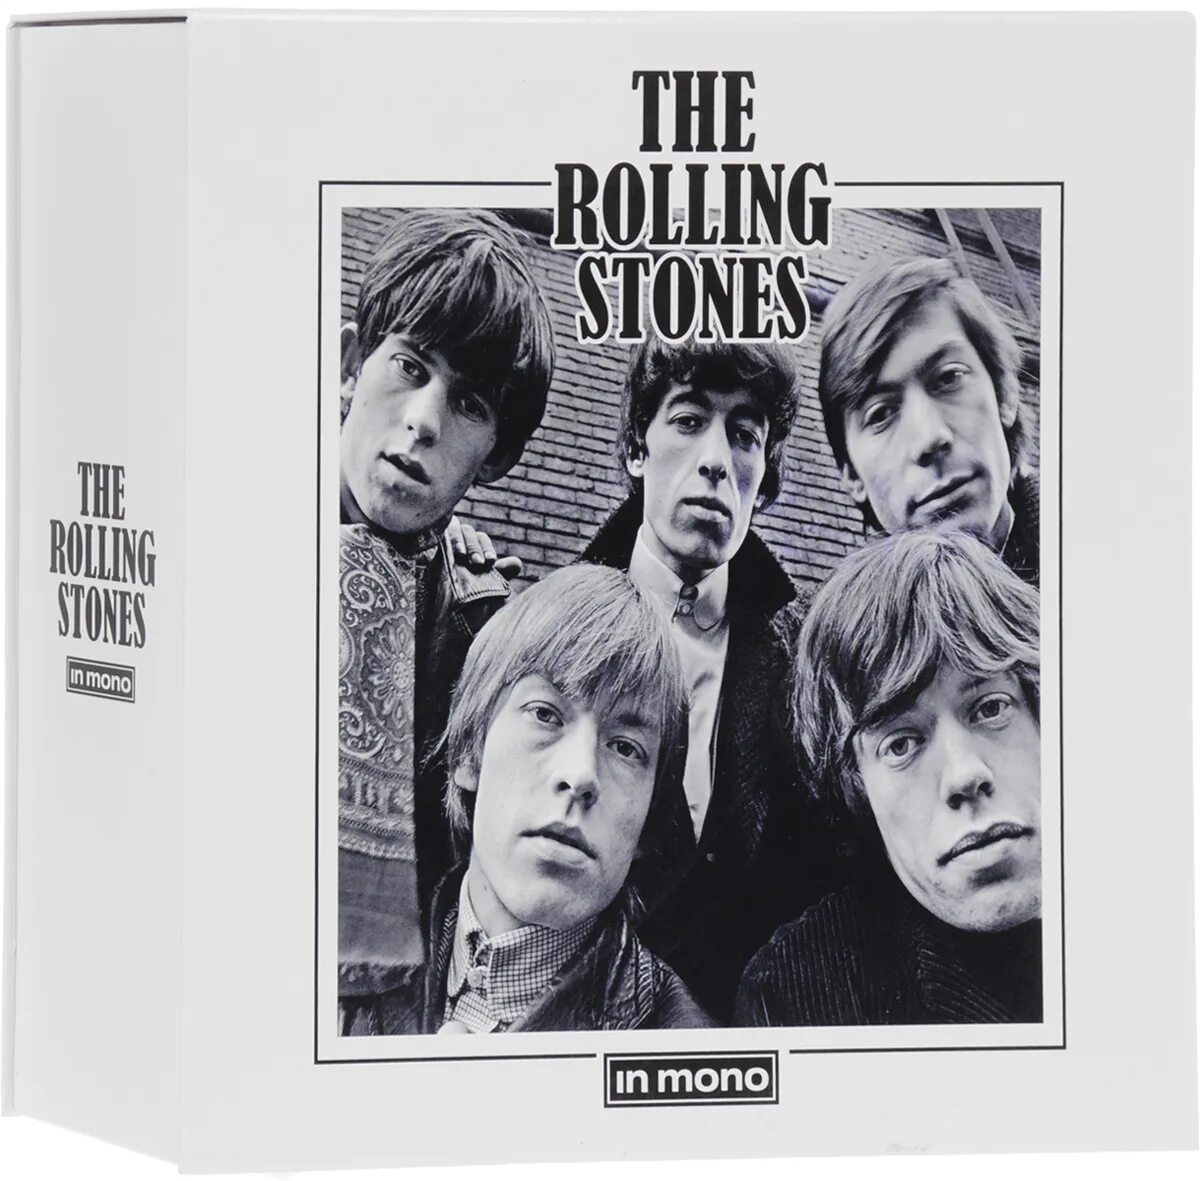 Rolling stone купить. Обложка Rolling Stones mono. CD Box Set Rolling Stones. The Rolling Stones 16 CD Box. The Rolling Stones in mono.